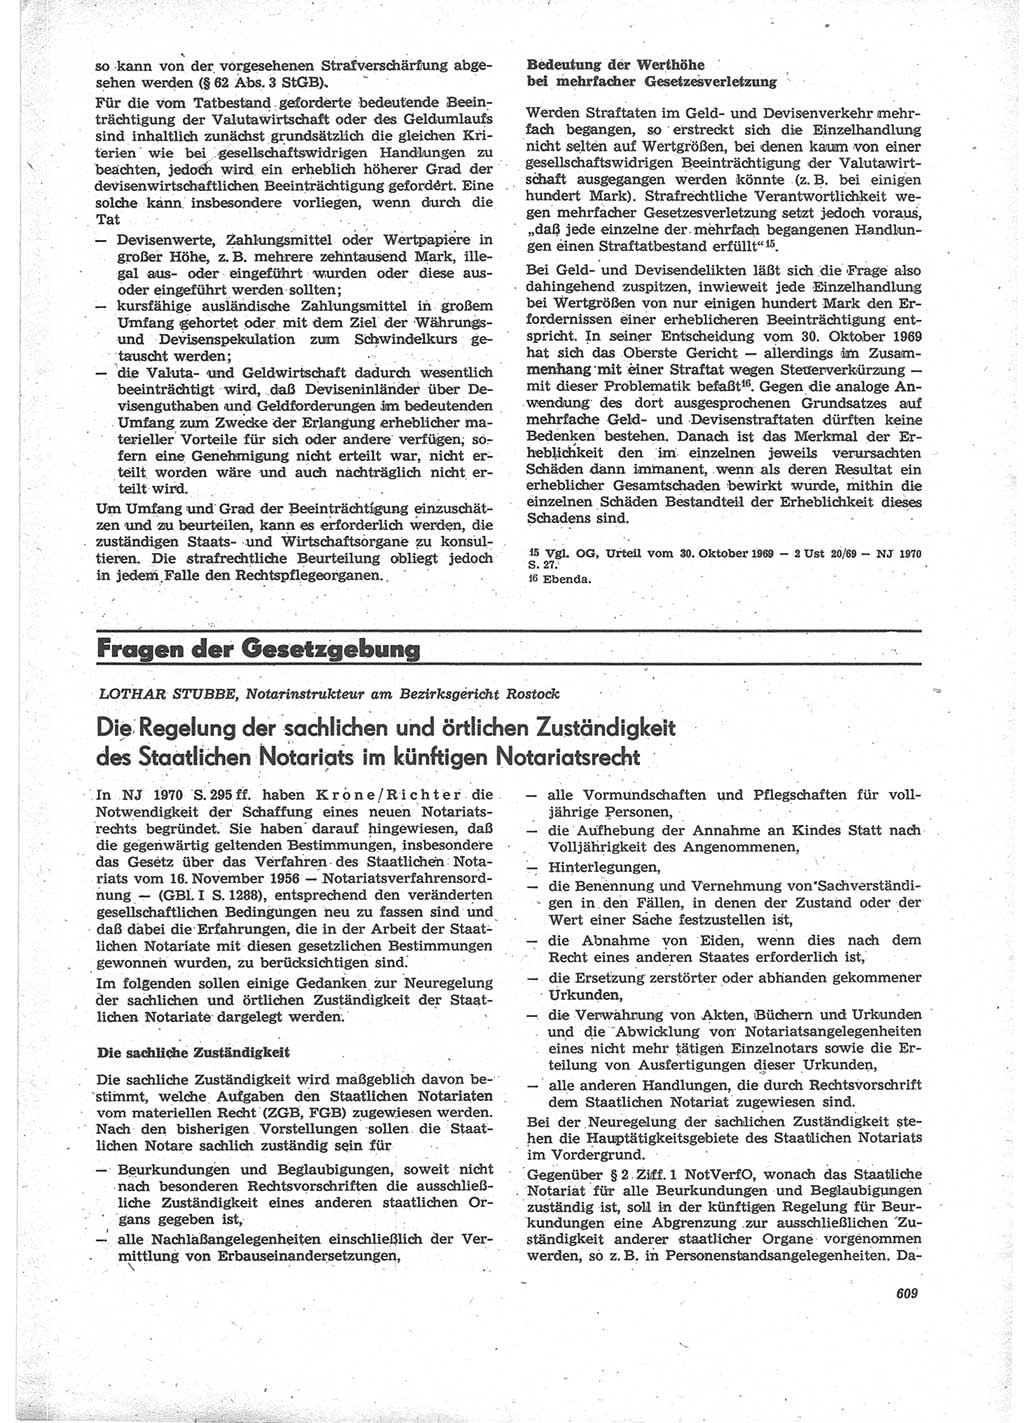 Neue Justiz (NJ), Zeitschrift für Recht und Rechtswissenschaft [Deutsche Demokratische Republik (DDR)], 24. Jahrgang 1970, Seite 609 (NJ DDR 1970, S. 609)